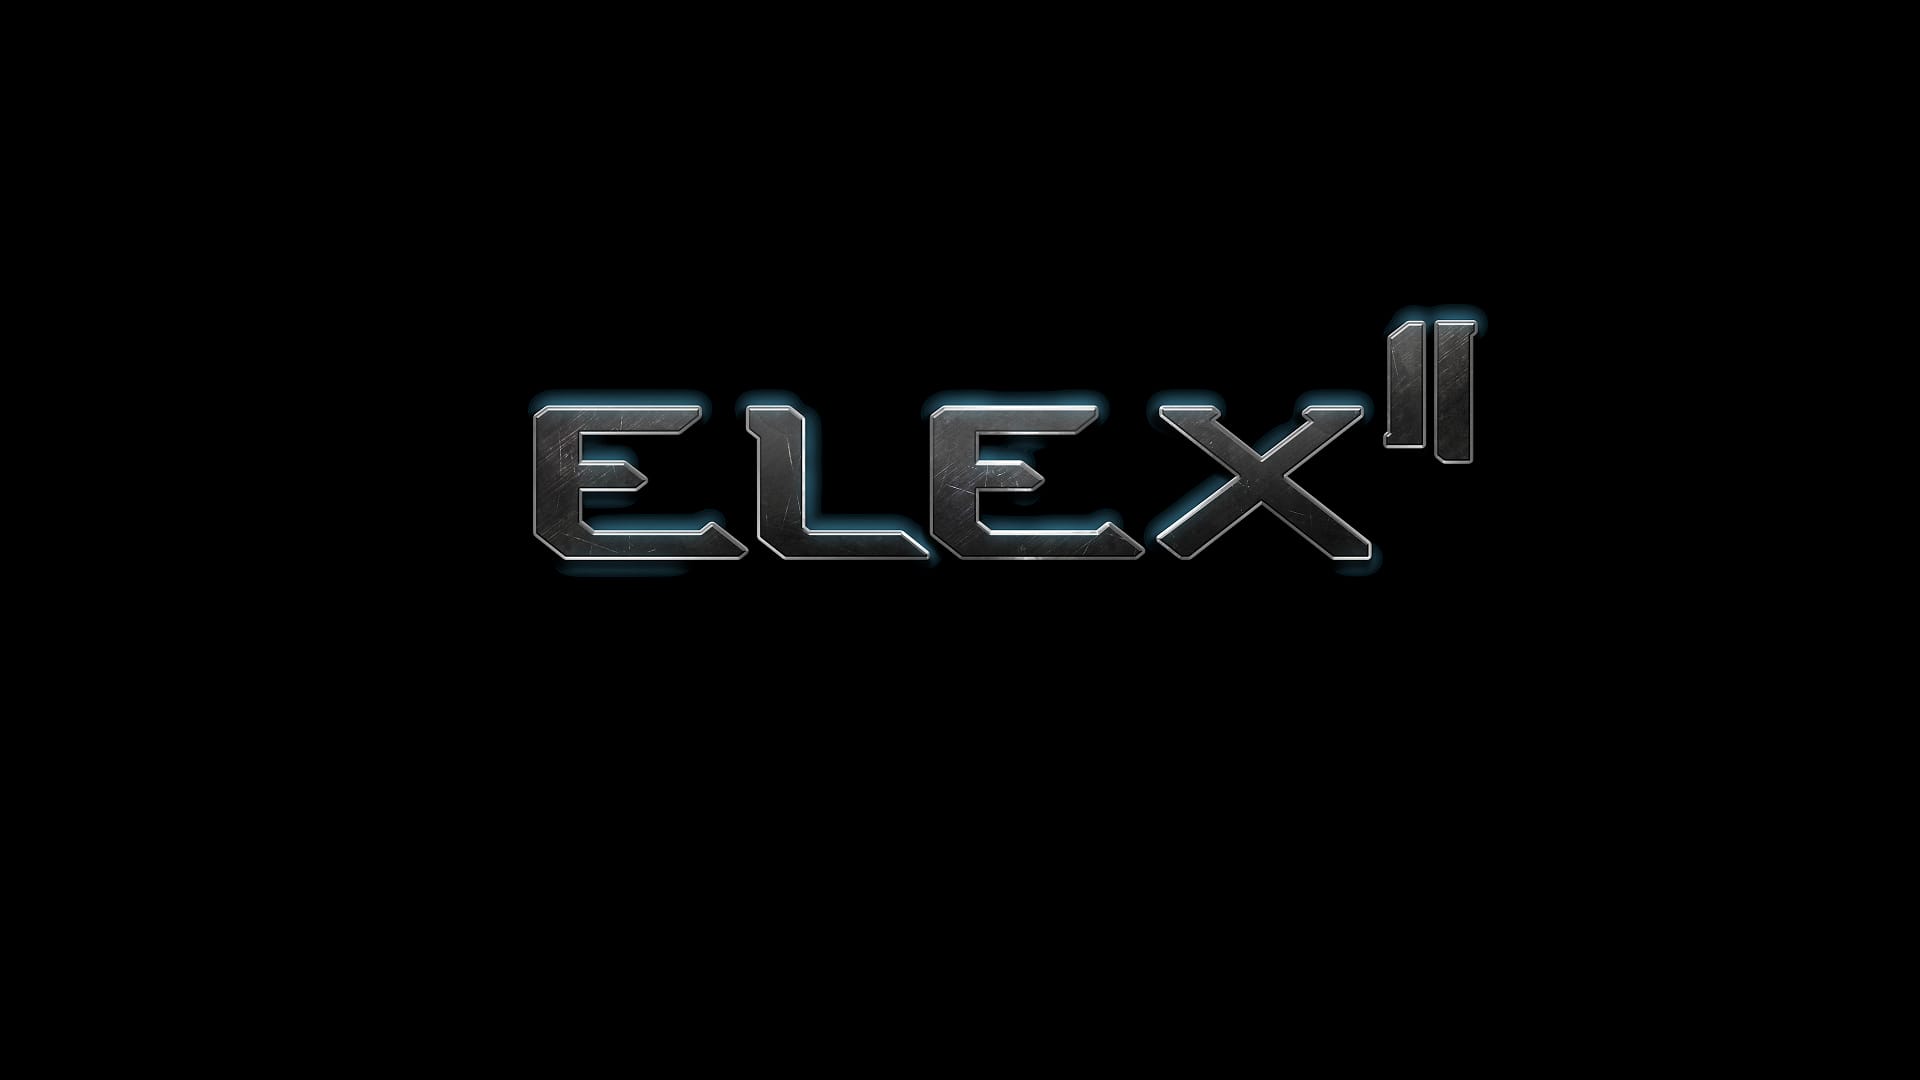 Level zero extraction. ELEX 2 лого. Телеканал 2x2 логотип. Ps4 эмблема. Обои на ПК нави.